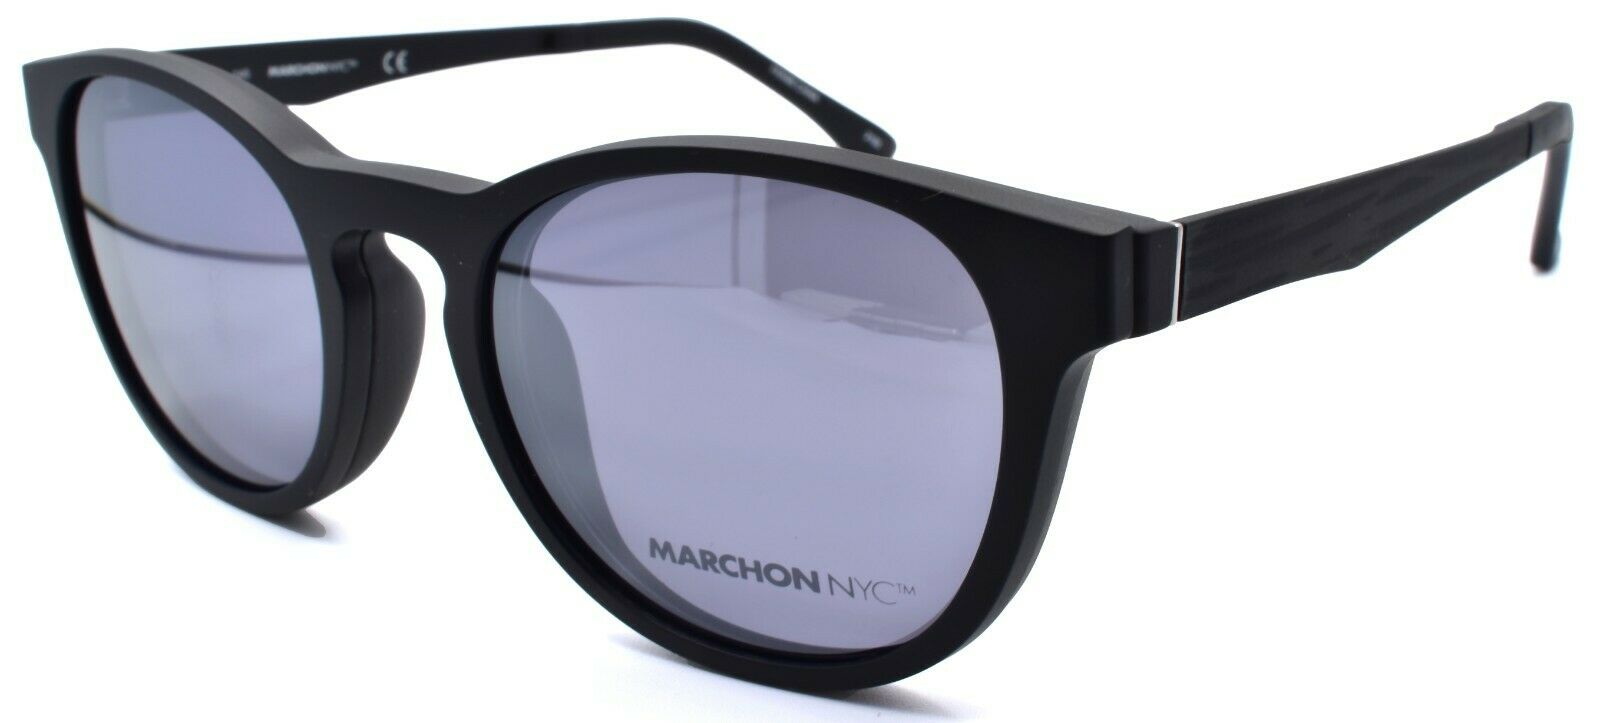 1-Marchon M-1502 002 Eyeglasses Frames 50-19-140 Matte Black + 2 Magnetic Clip Ons-886895484350-IKSpecs